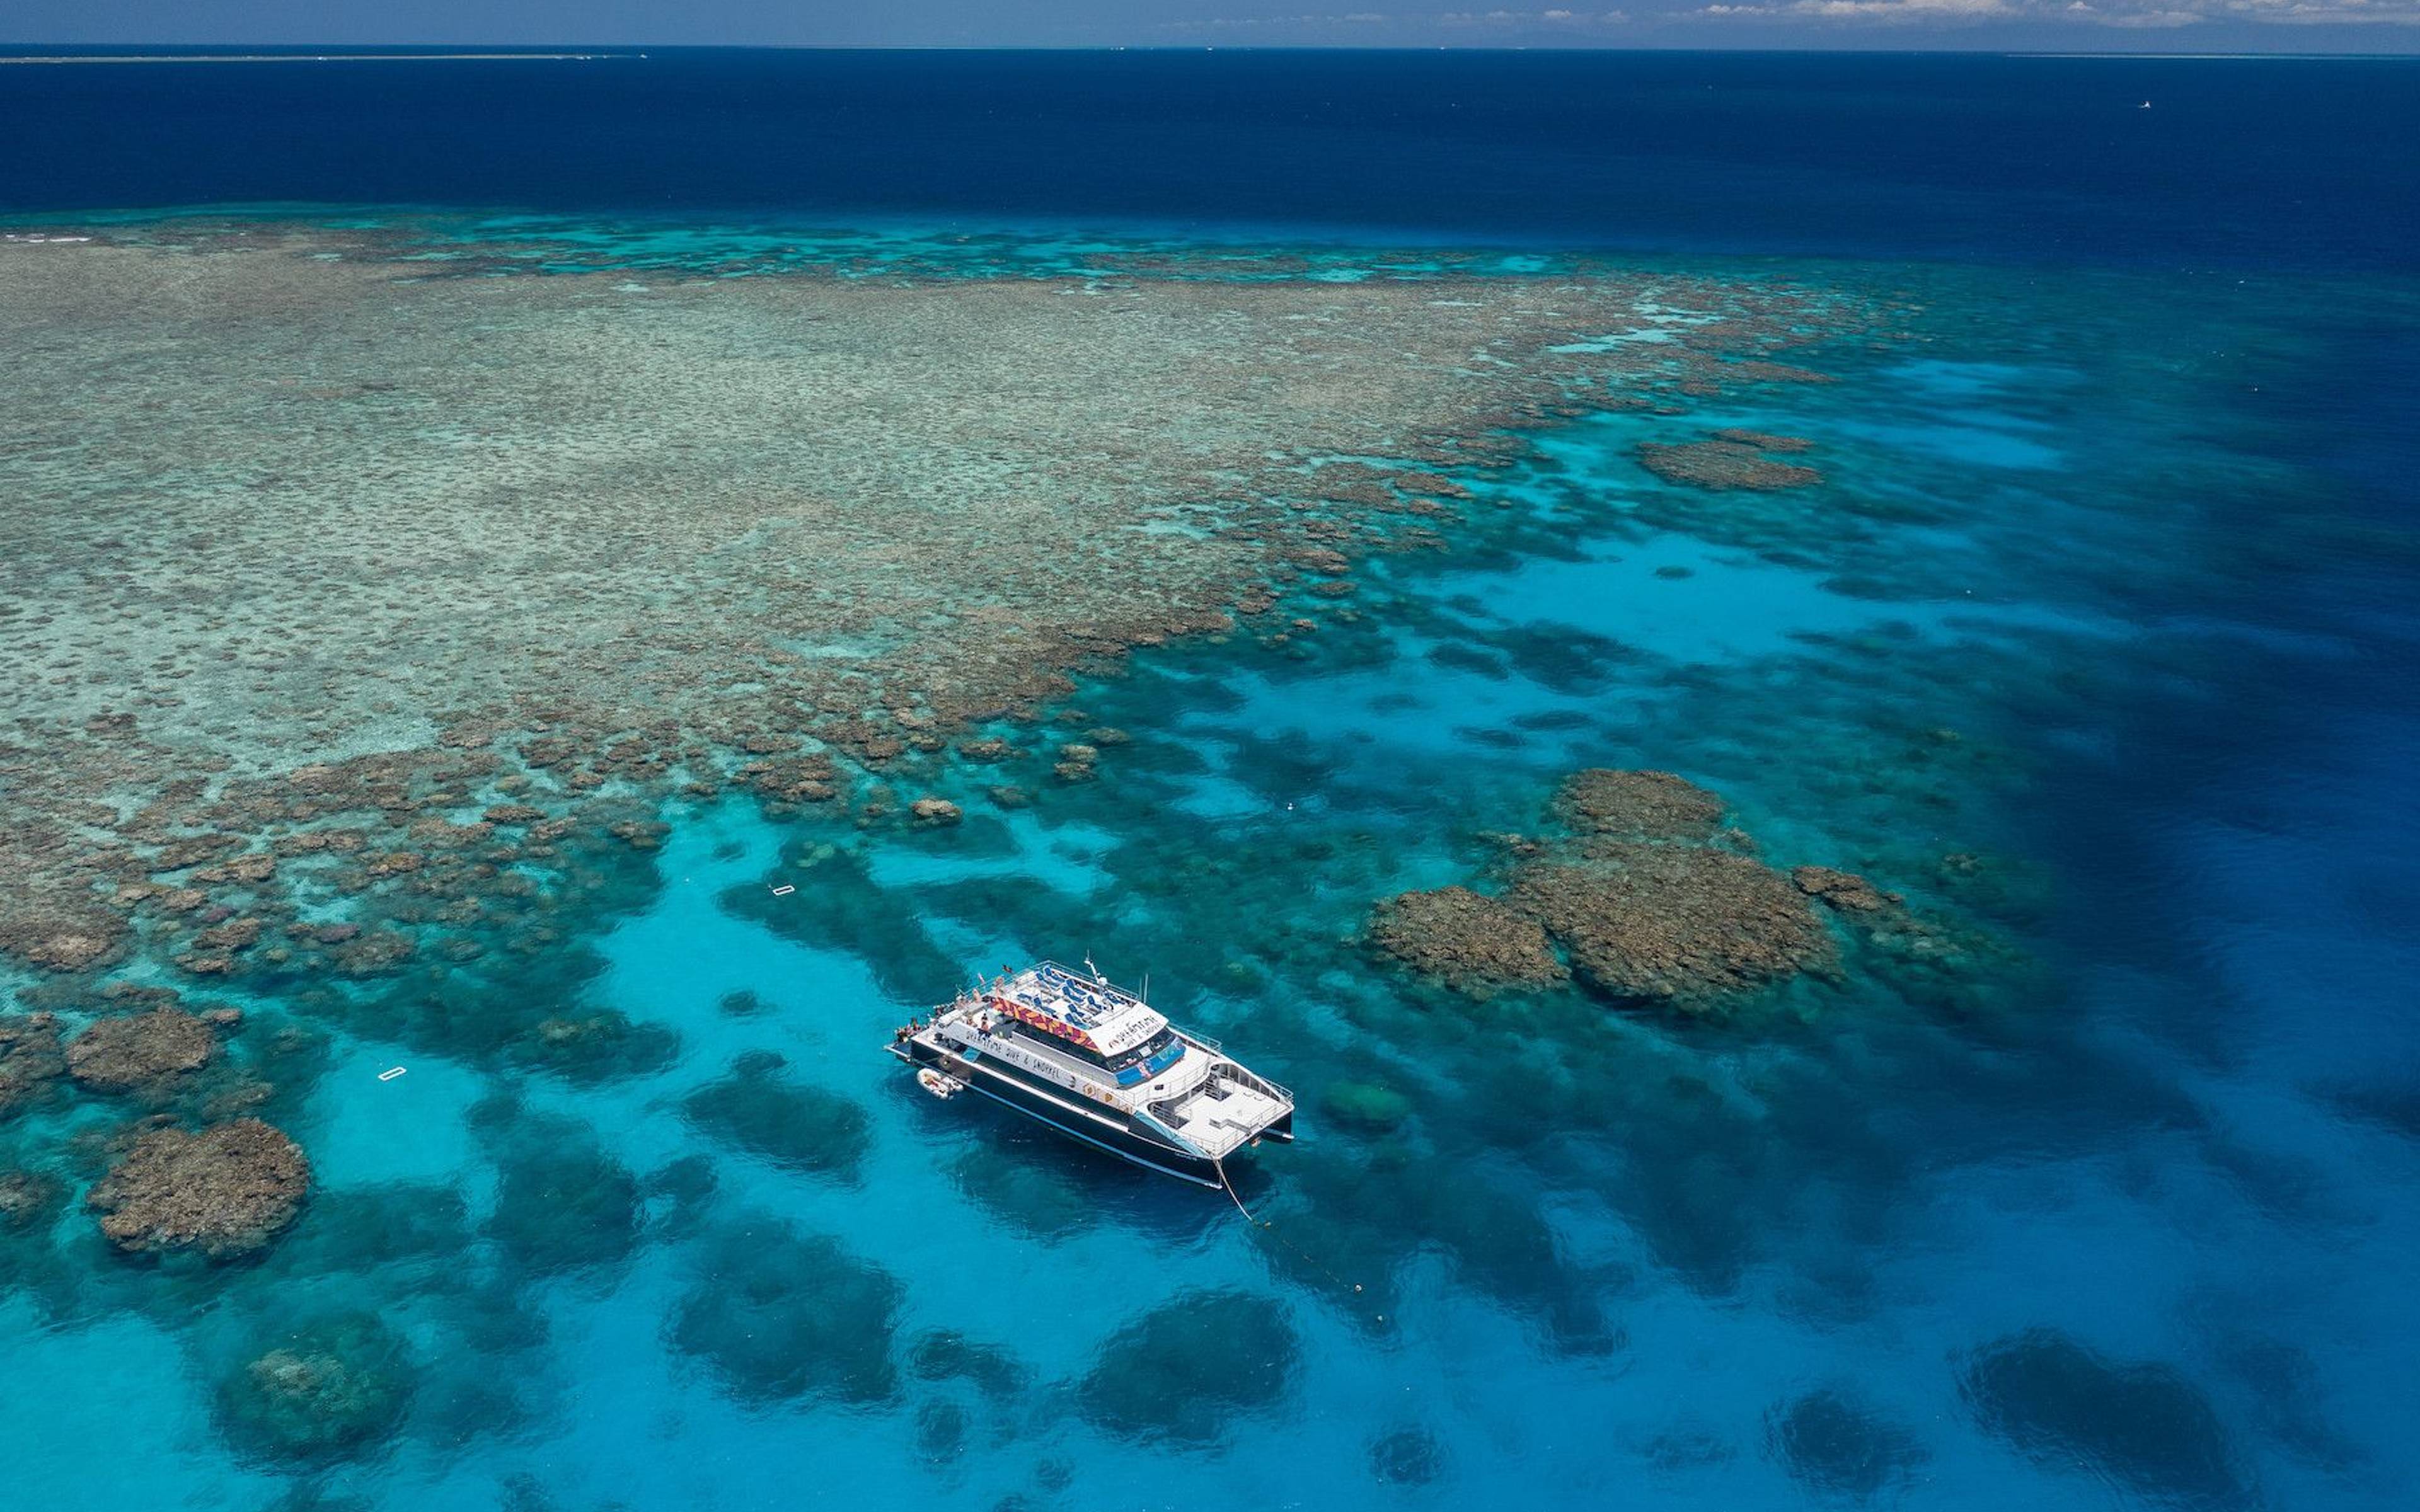 Déjate cautivar por las maravillas de la Gran Barrera de Coral